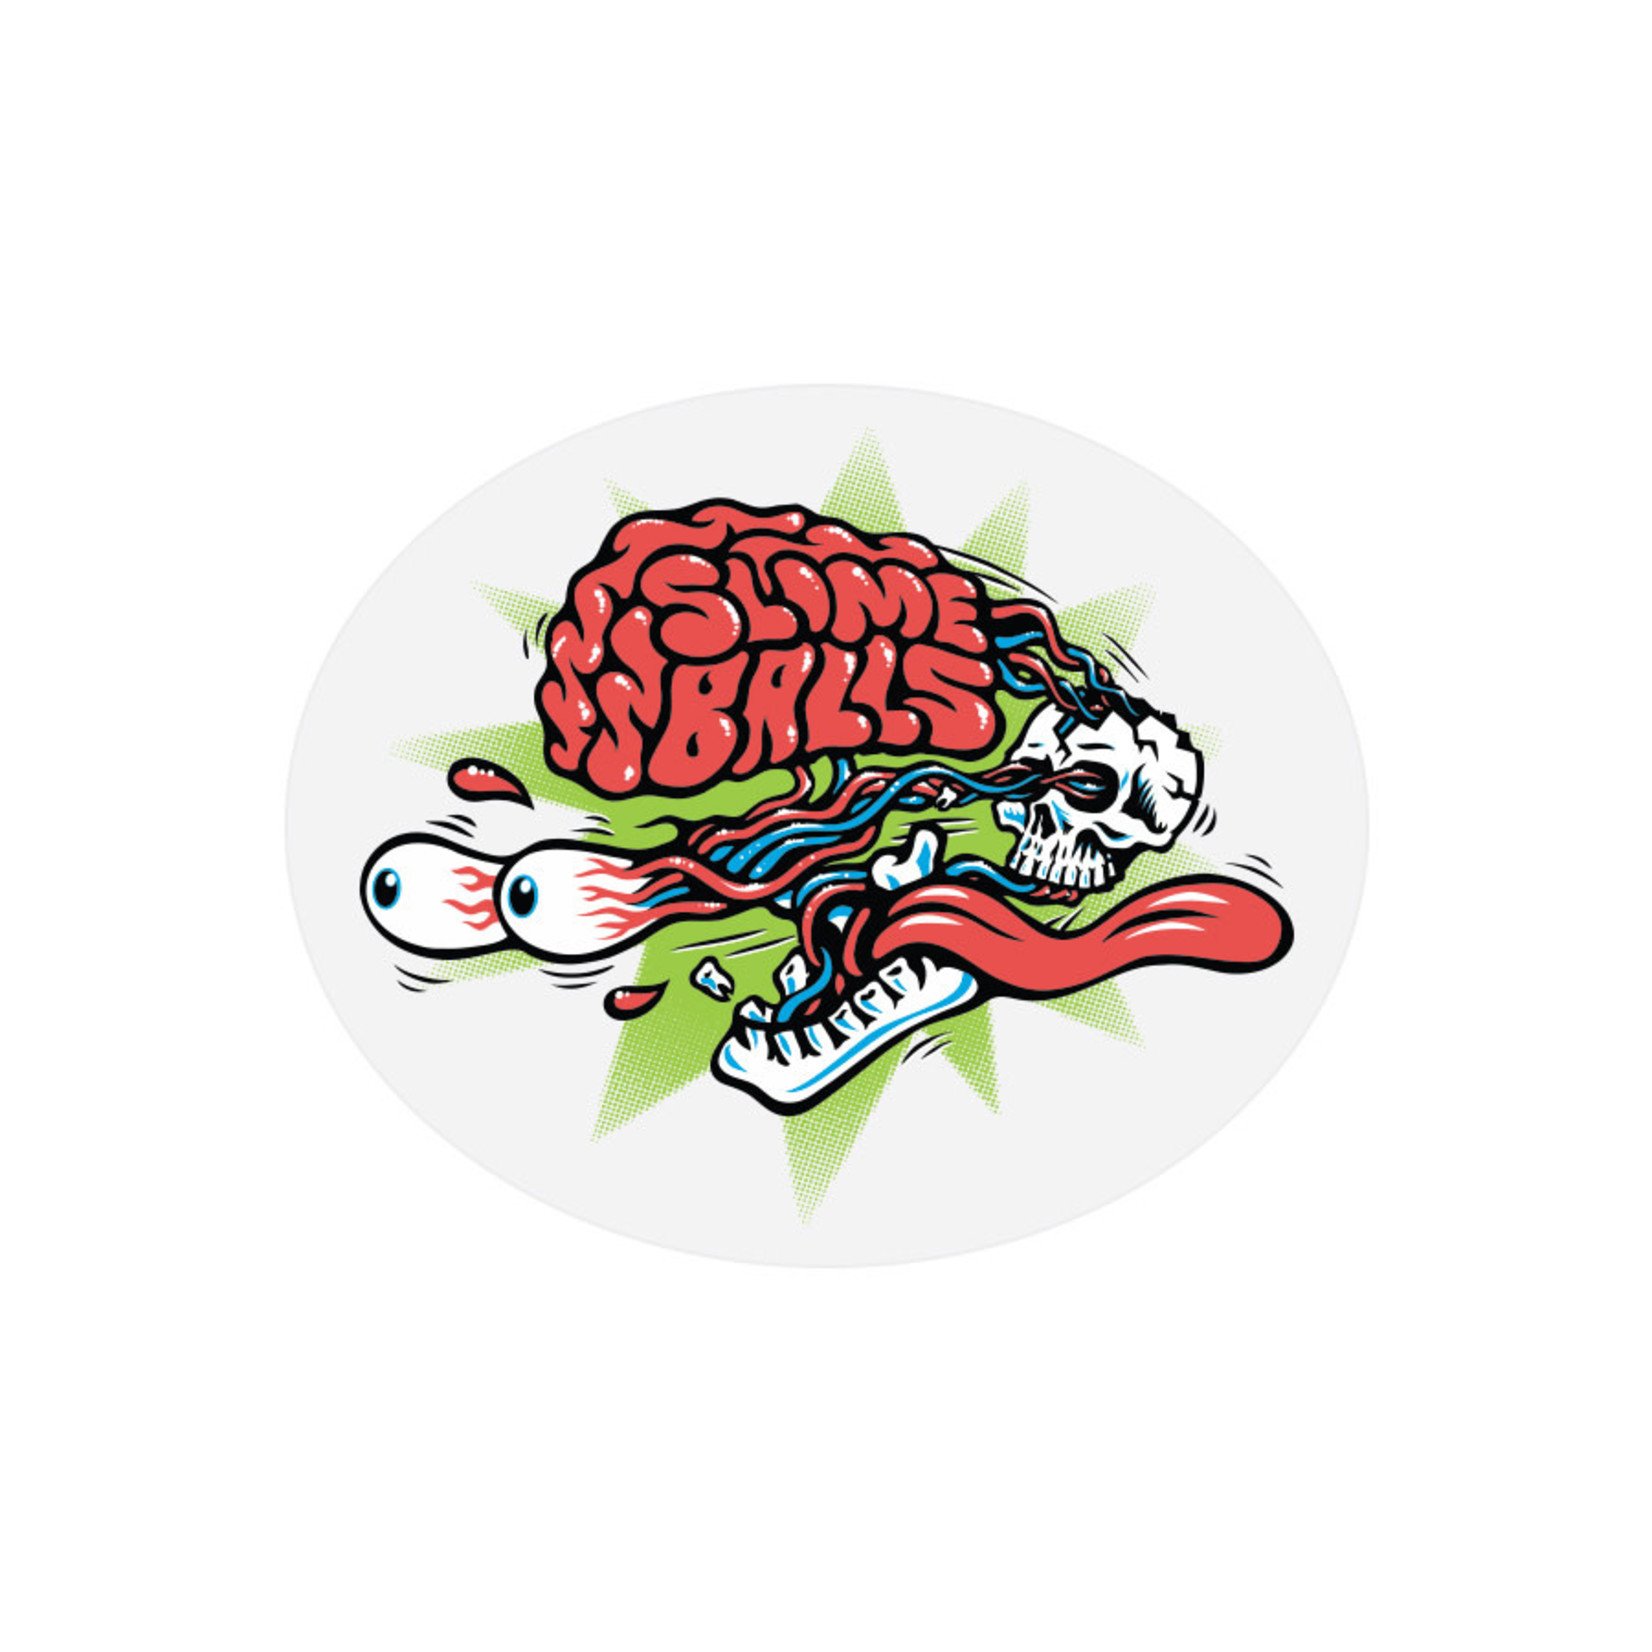 Santa Cruz Skateboards Slime Balls Brain Buster Sticker 3.5 in Oval